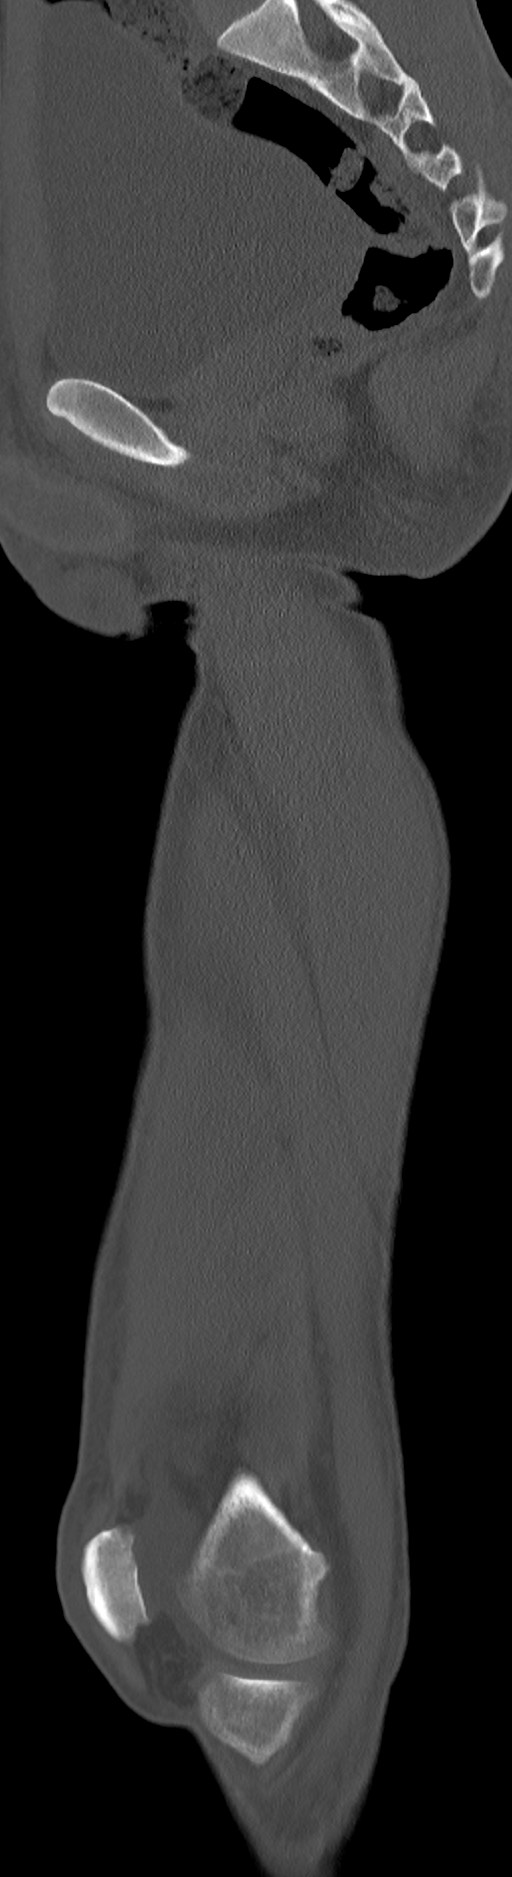 Chronic osteomyelitis (with sequestrum) (Radiopaedia 74813-85822 C 61).jpg